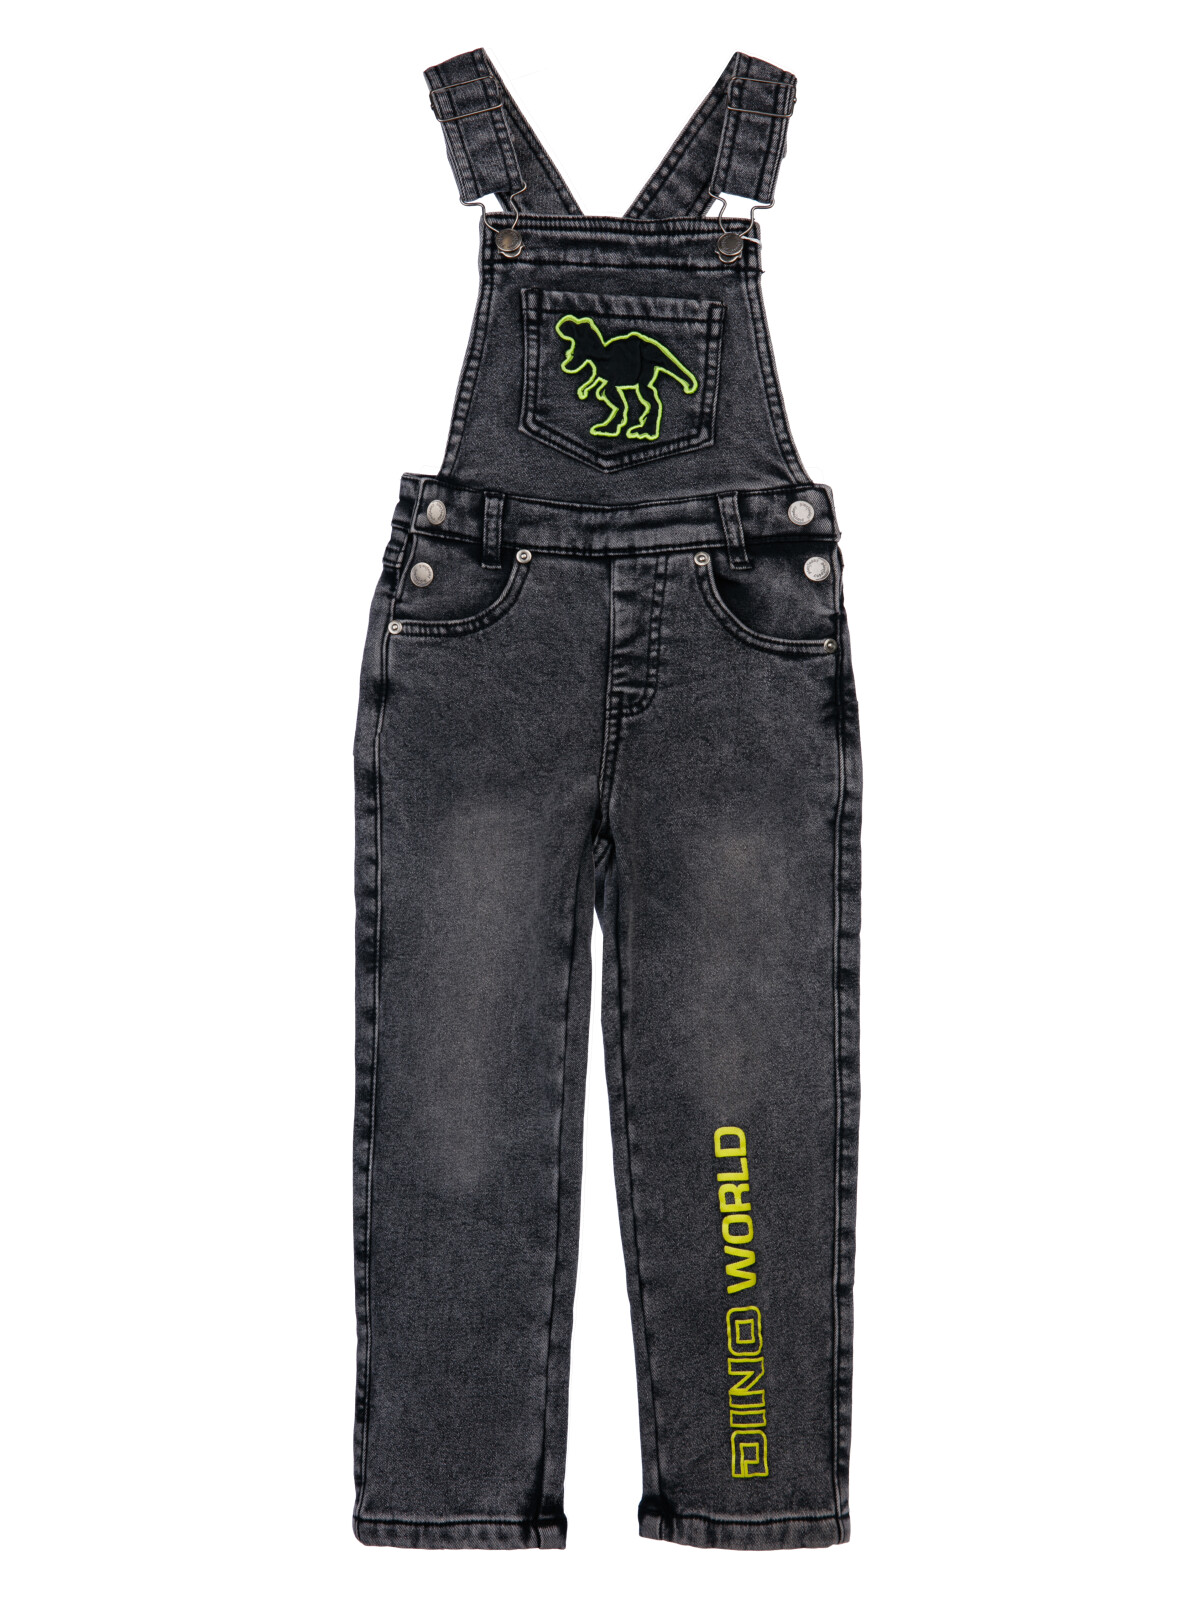 Полукомбинезон текстильный джинсовый утепленный флисом для мальчиков PlayToday, черный, 98 oshkosh b gosh полукомбинезон джинсовый k320112